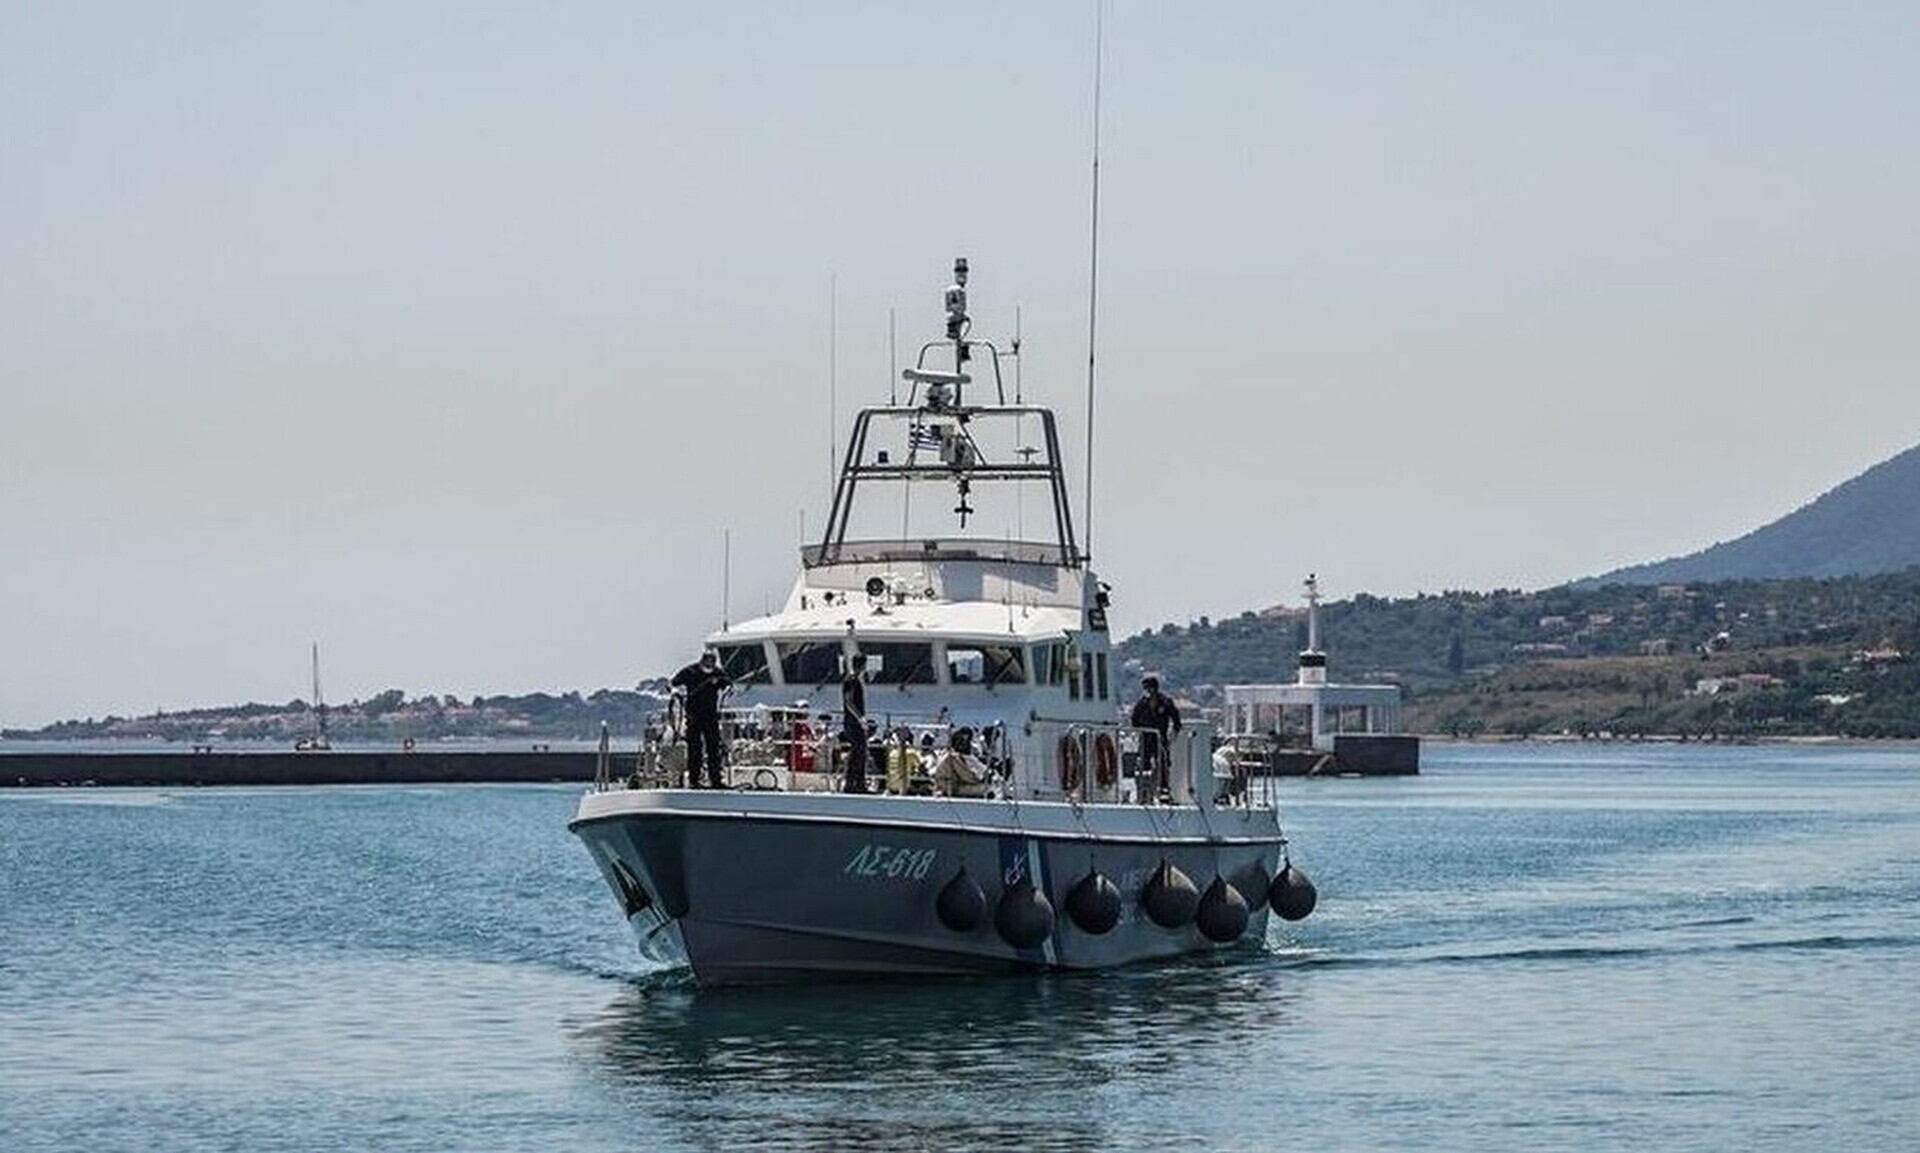 Ταχύπλοο με μετανάστες εντοπίστηκε από περιπολικό πλοίο του λιμενικού ν/α της Χίου